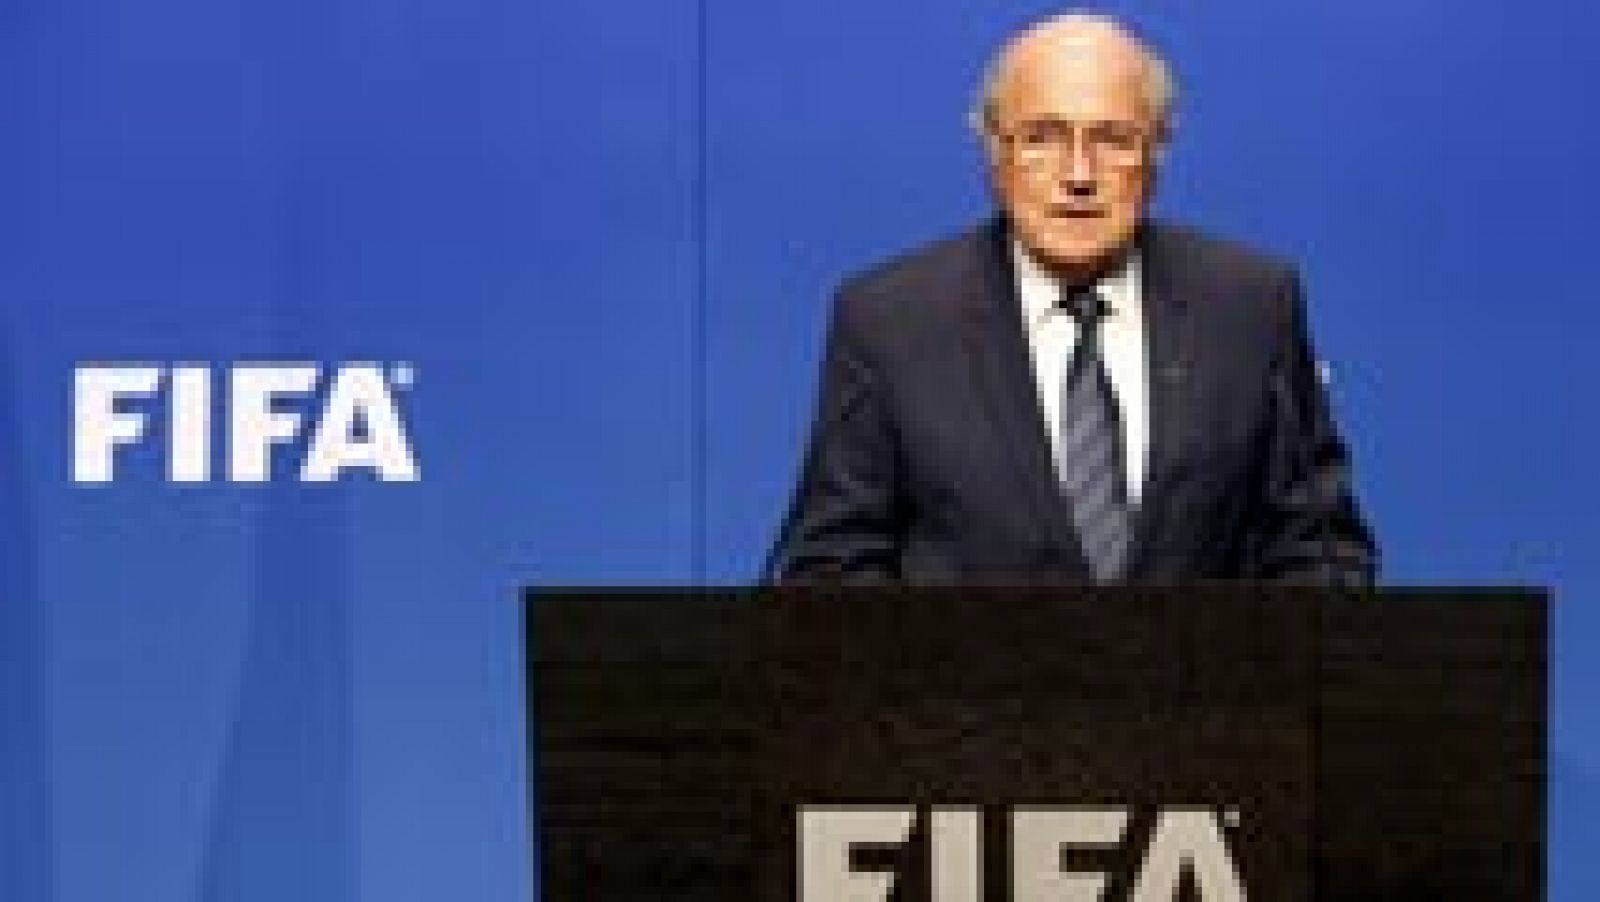 La final del Mundial de Catar 2022 se celebrará el 18 de diciembre, según ha confirmado el director de comunicación de la FIFA, Walter de Gregorio. También ha desvelado que la competición durará un total de 28 días, repartidos entre los meses de noviembre y diciembre.